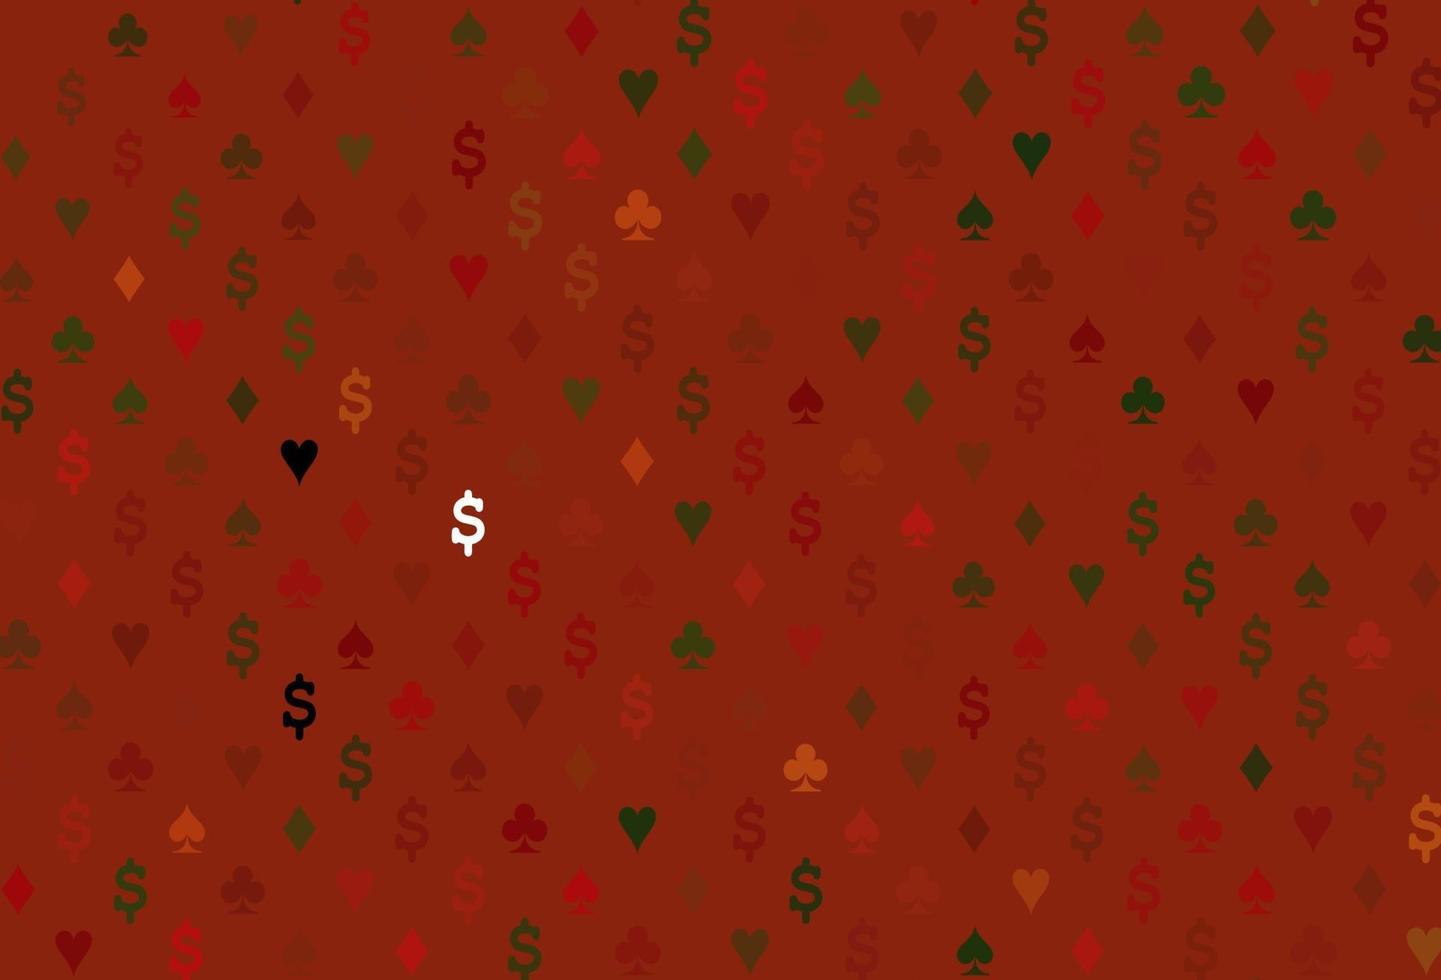 textura de vetor verde e vermelho claro com cartas de jogar.